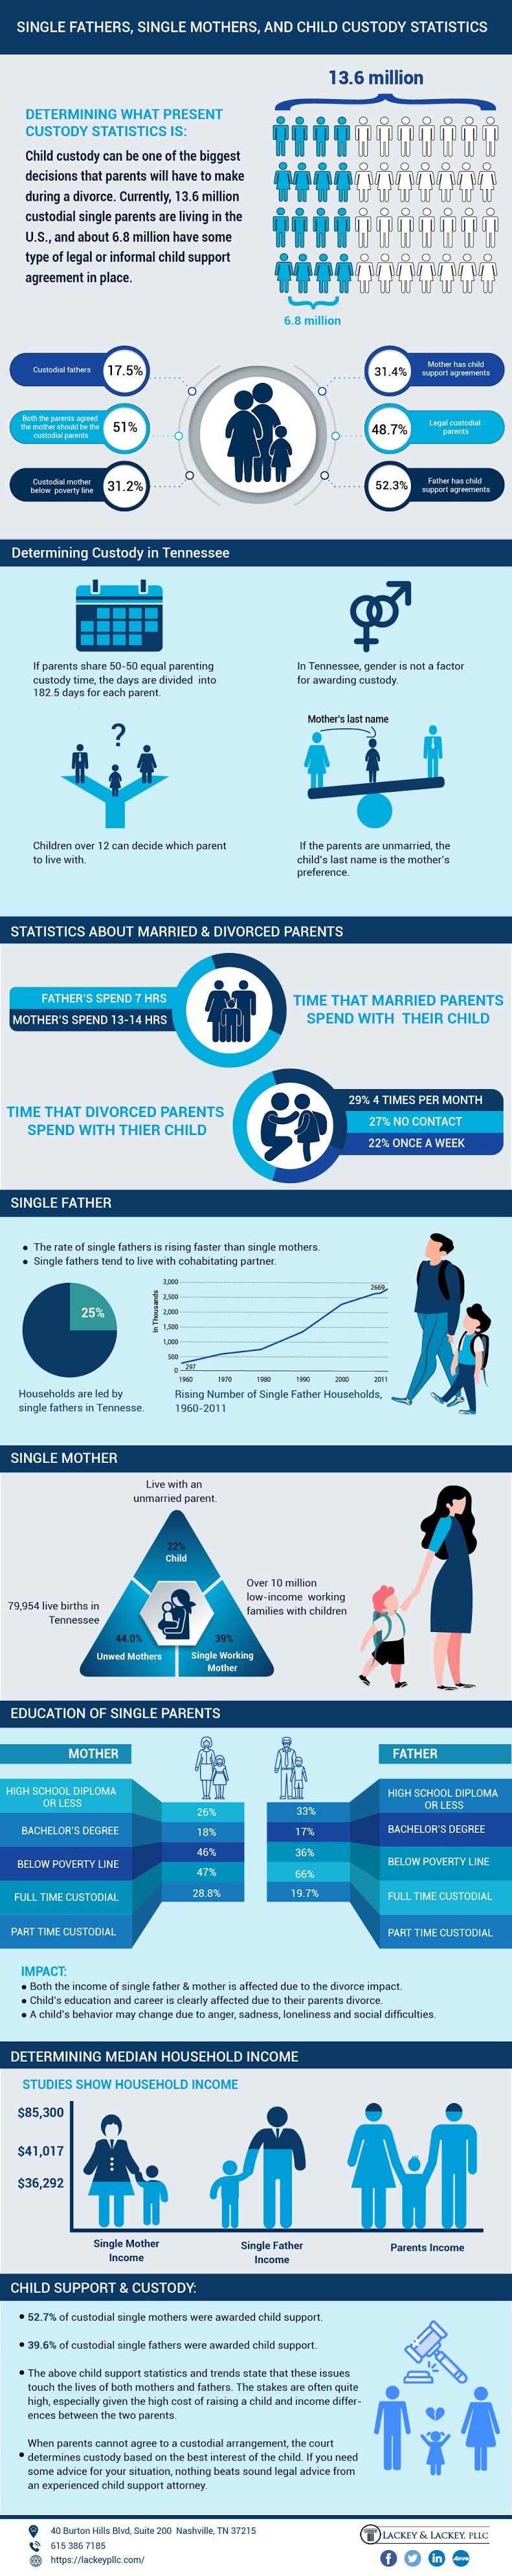  egyedülálló szülők infographic